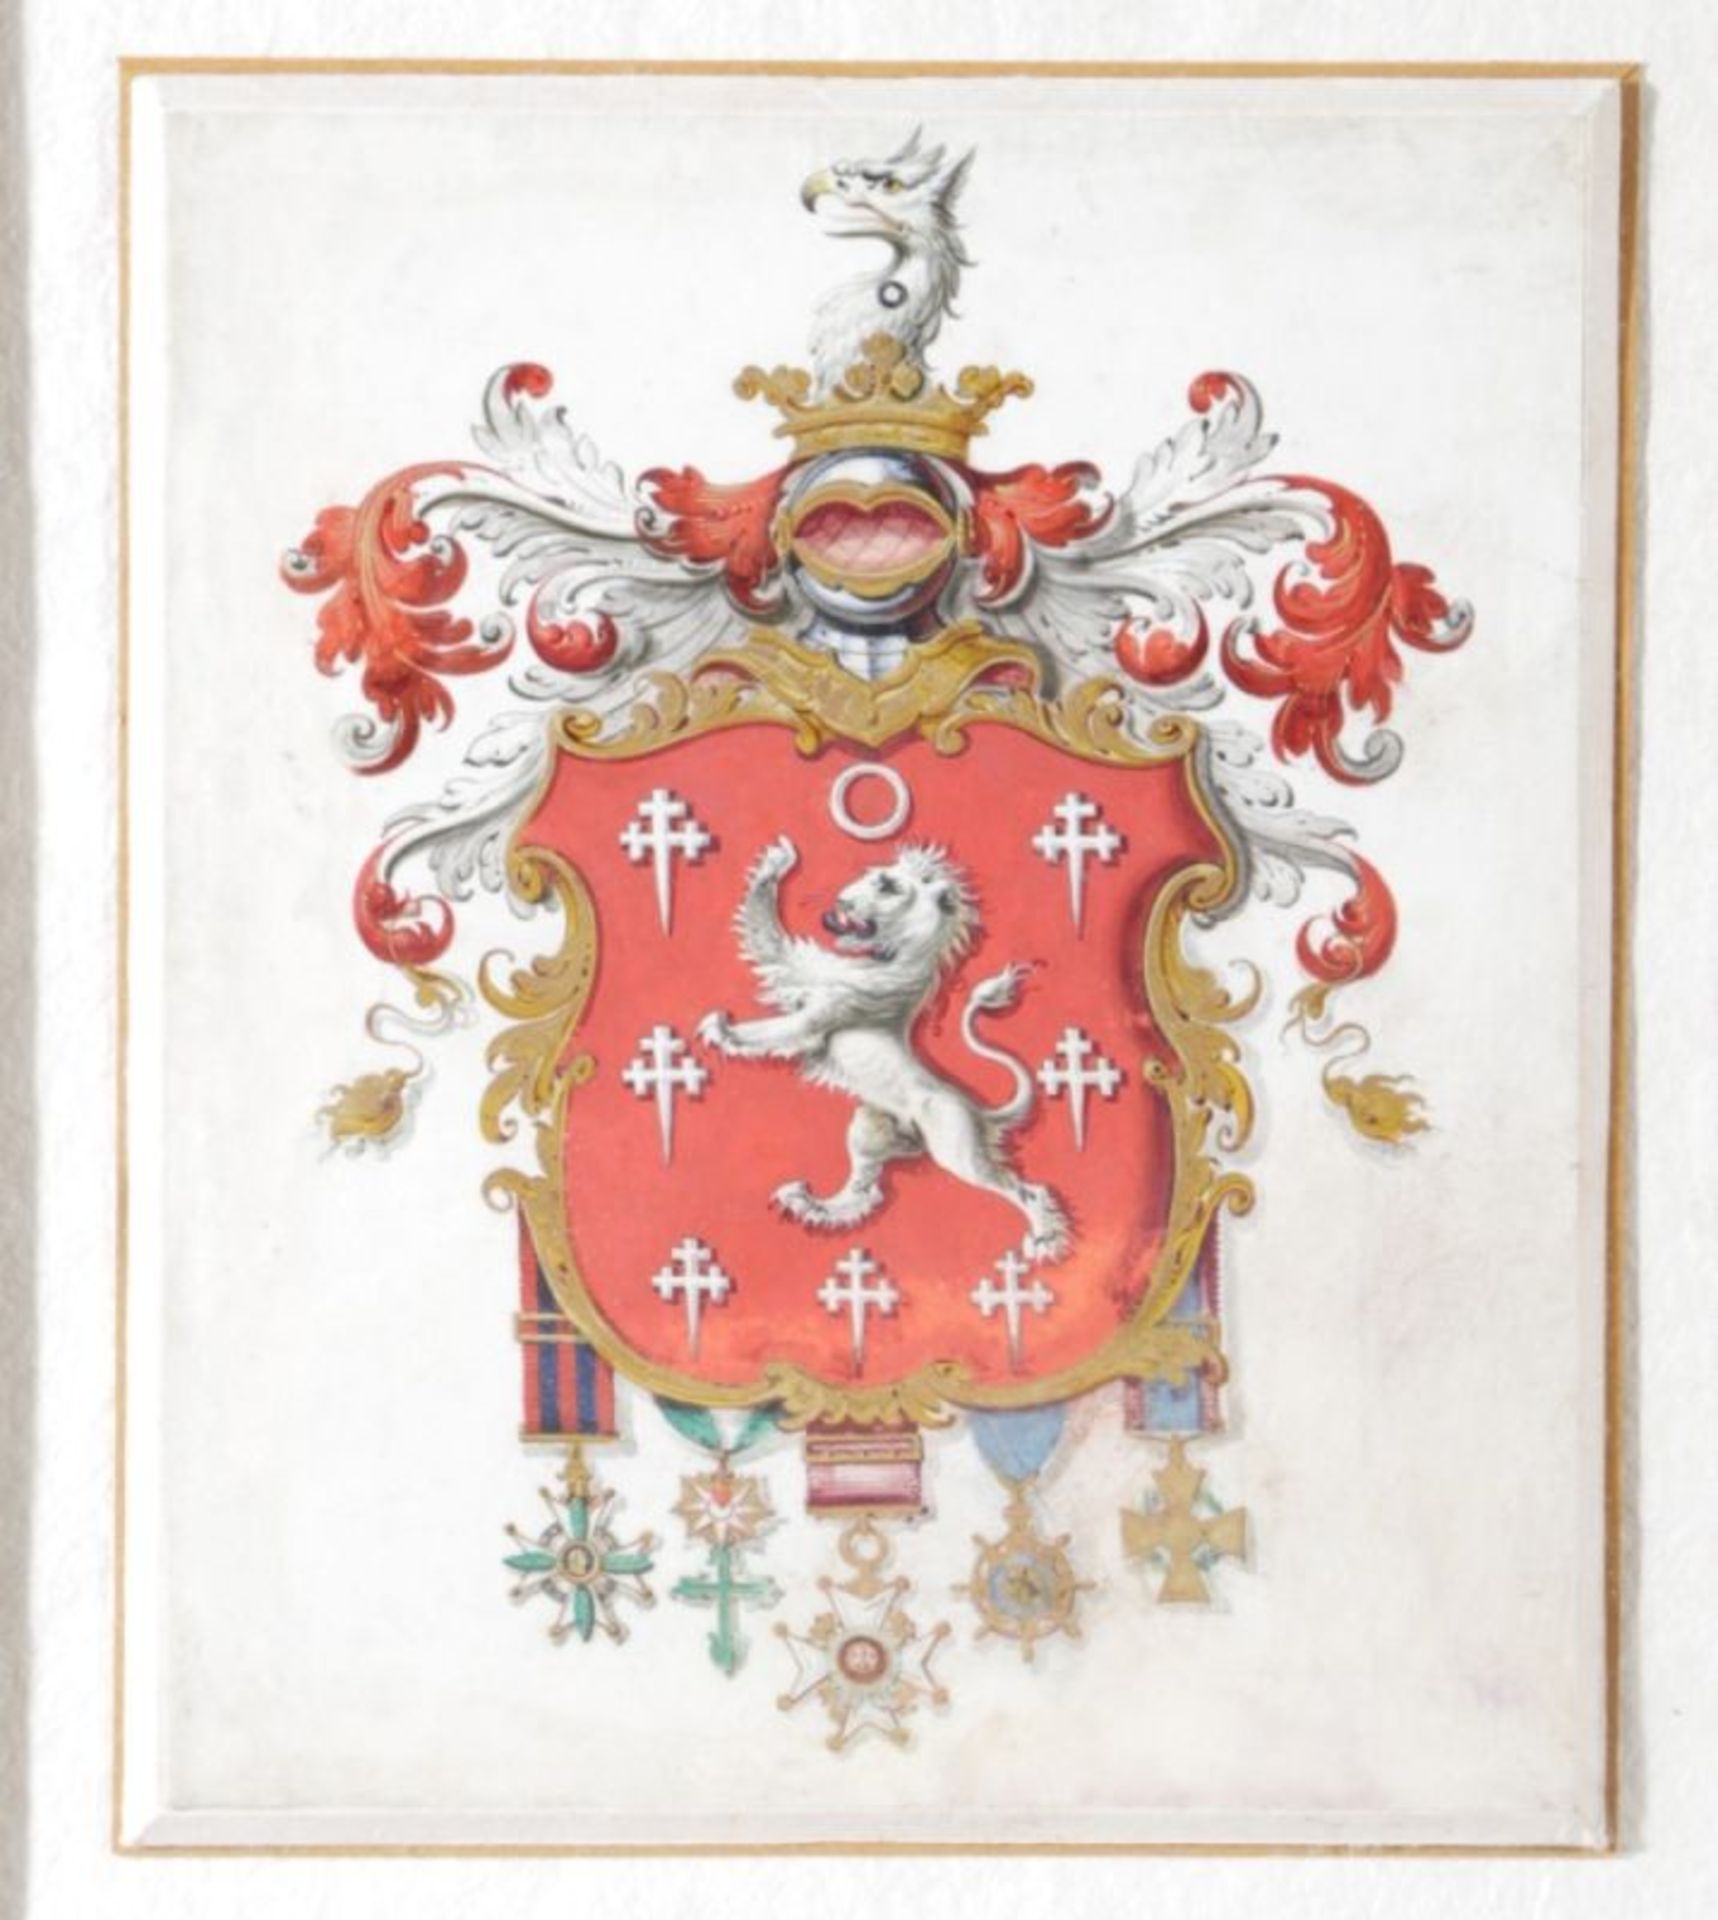 Anonymer Maler, wohl 19. Jh. "Wappen", Mischtechnik, 22 x 18 cm